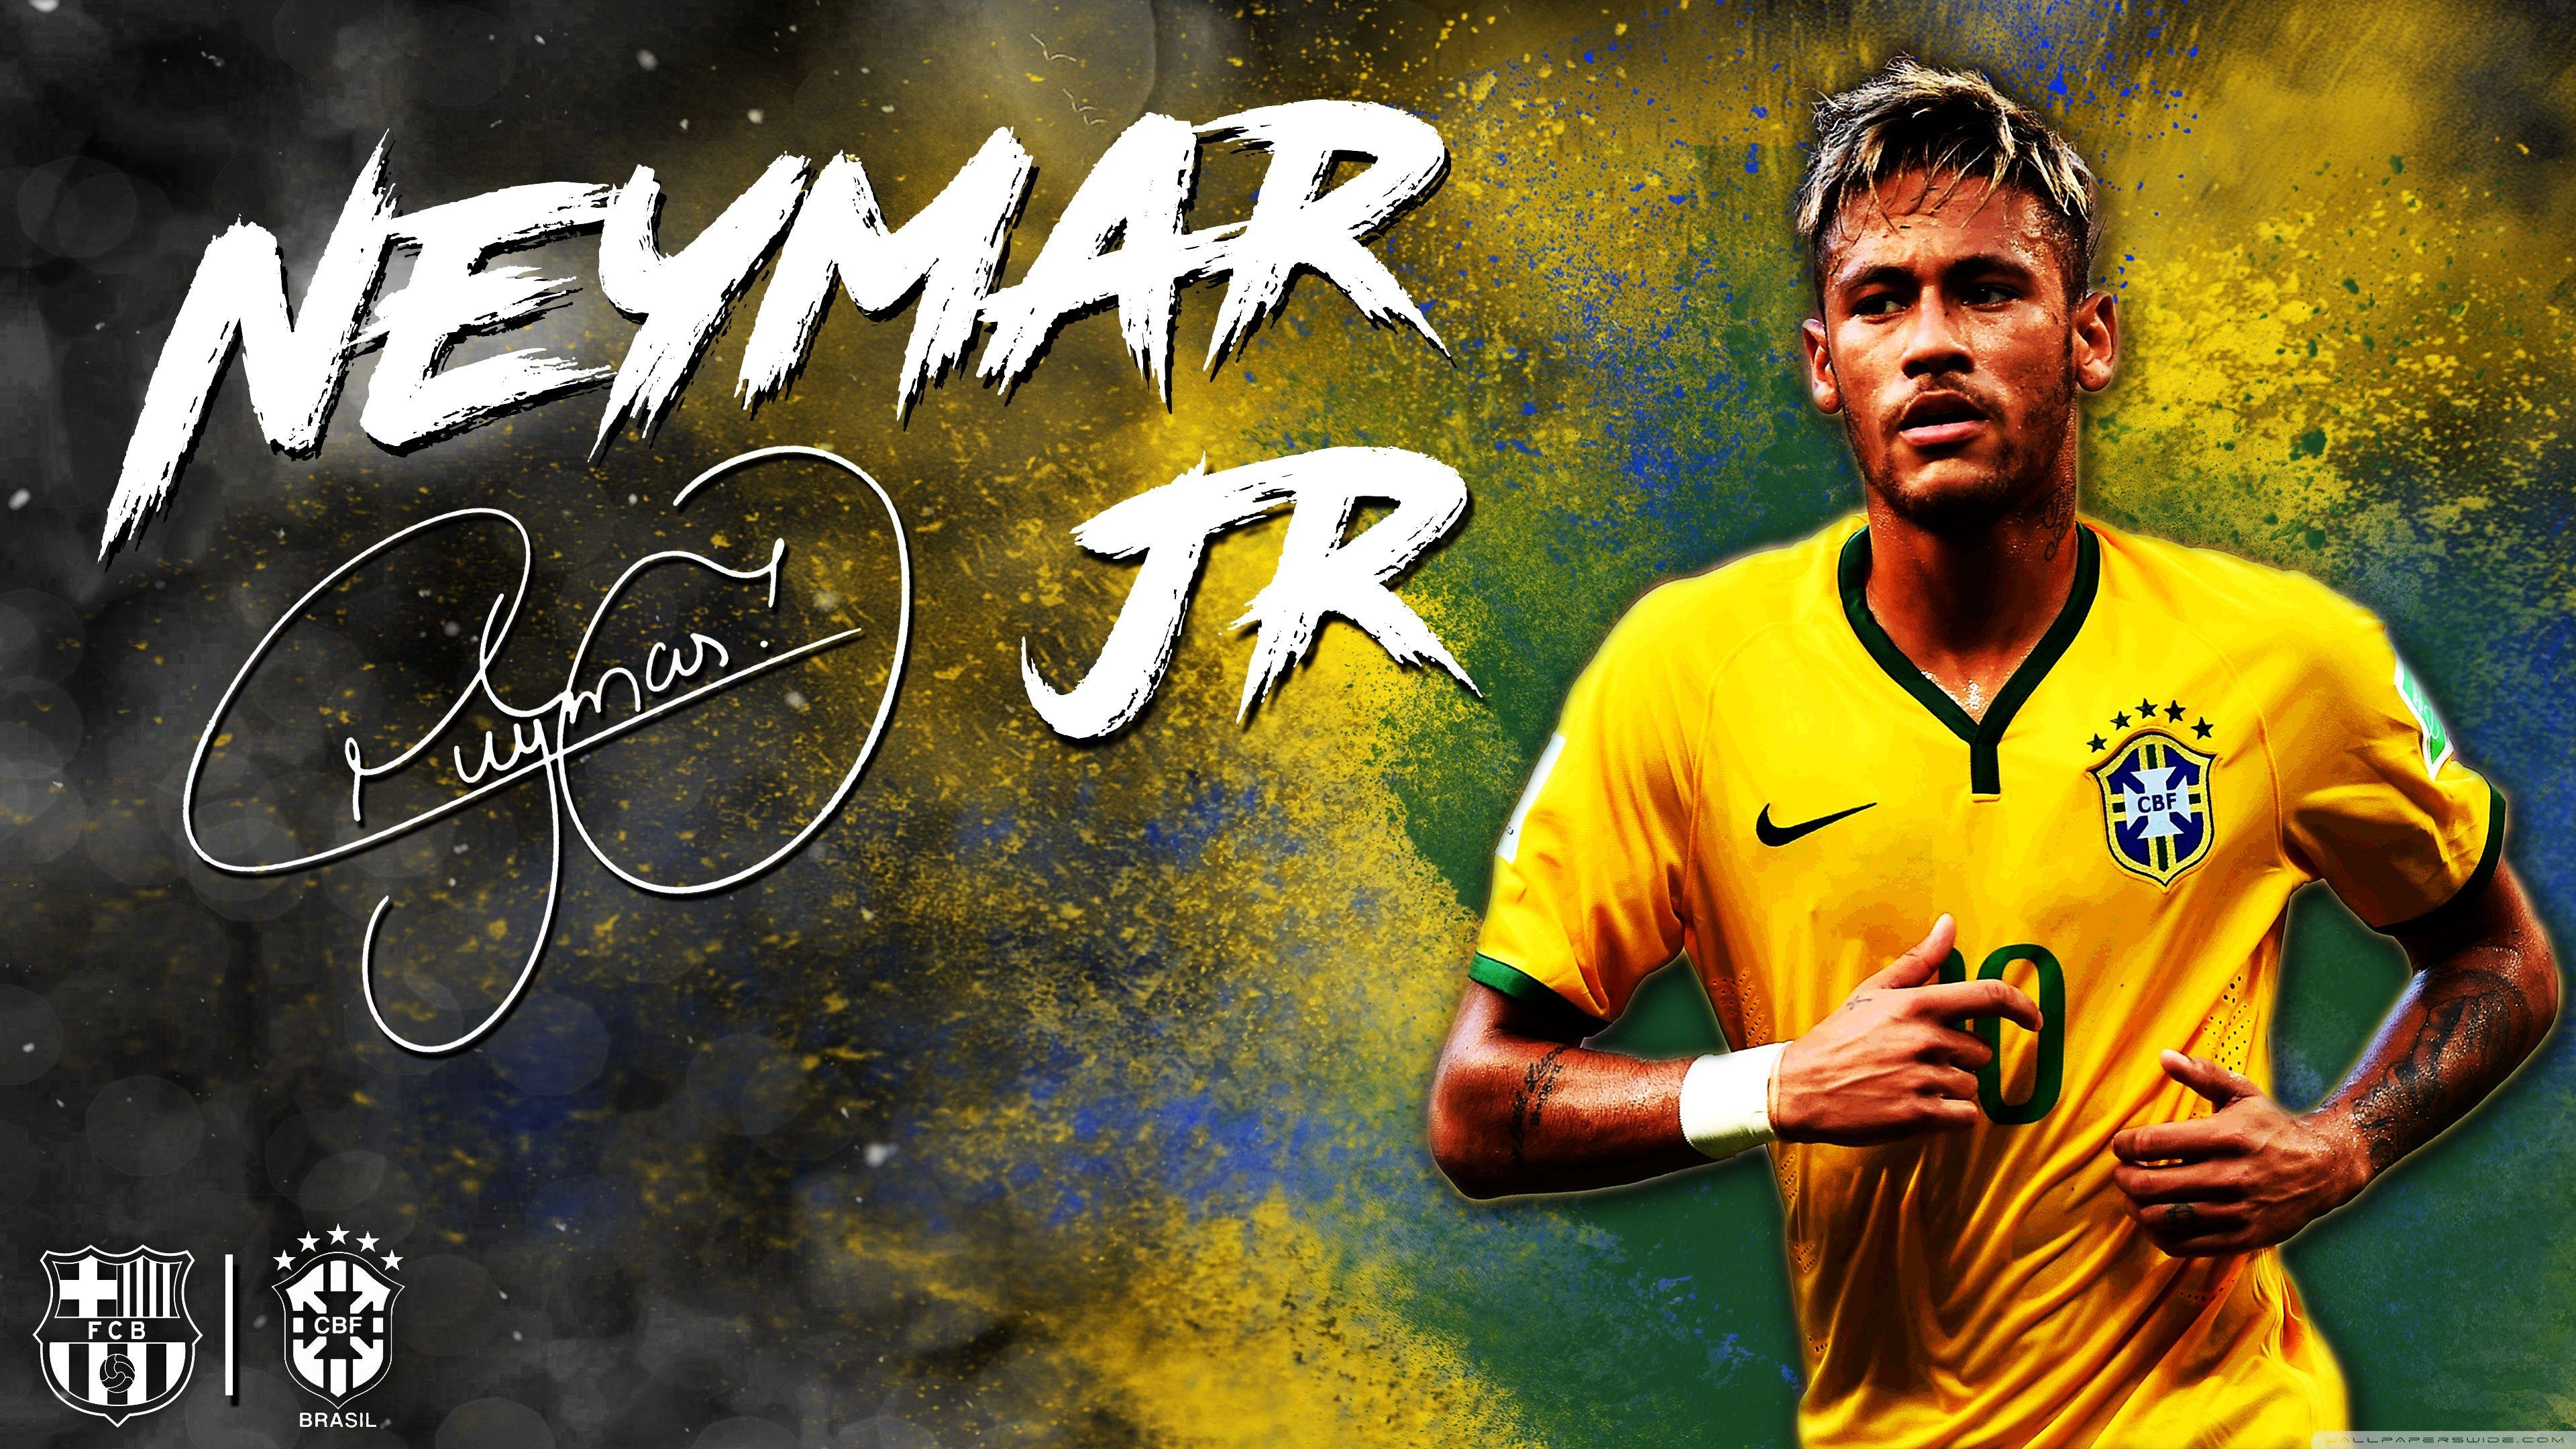 Neymar Wallpapers - Top Free Neymar Backgrounds ...